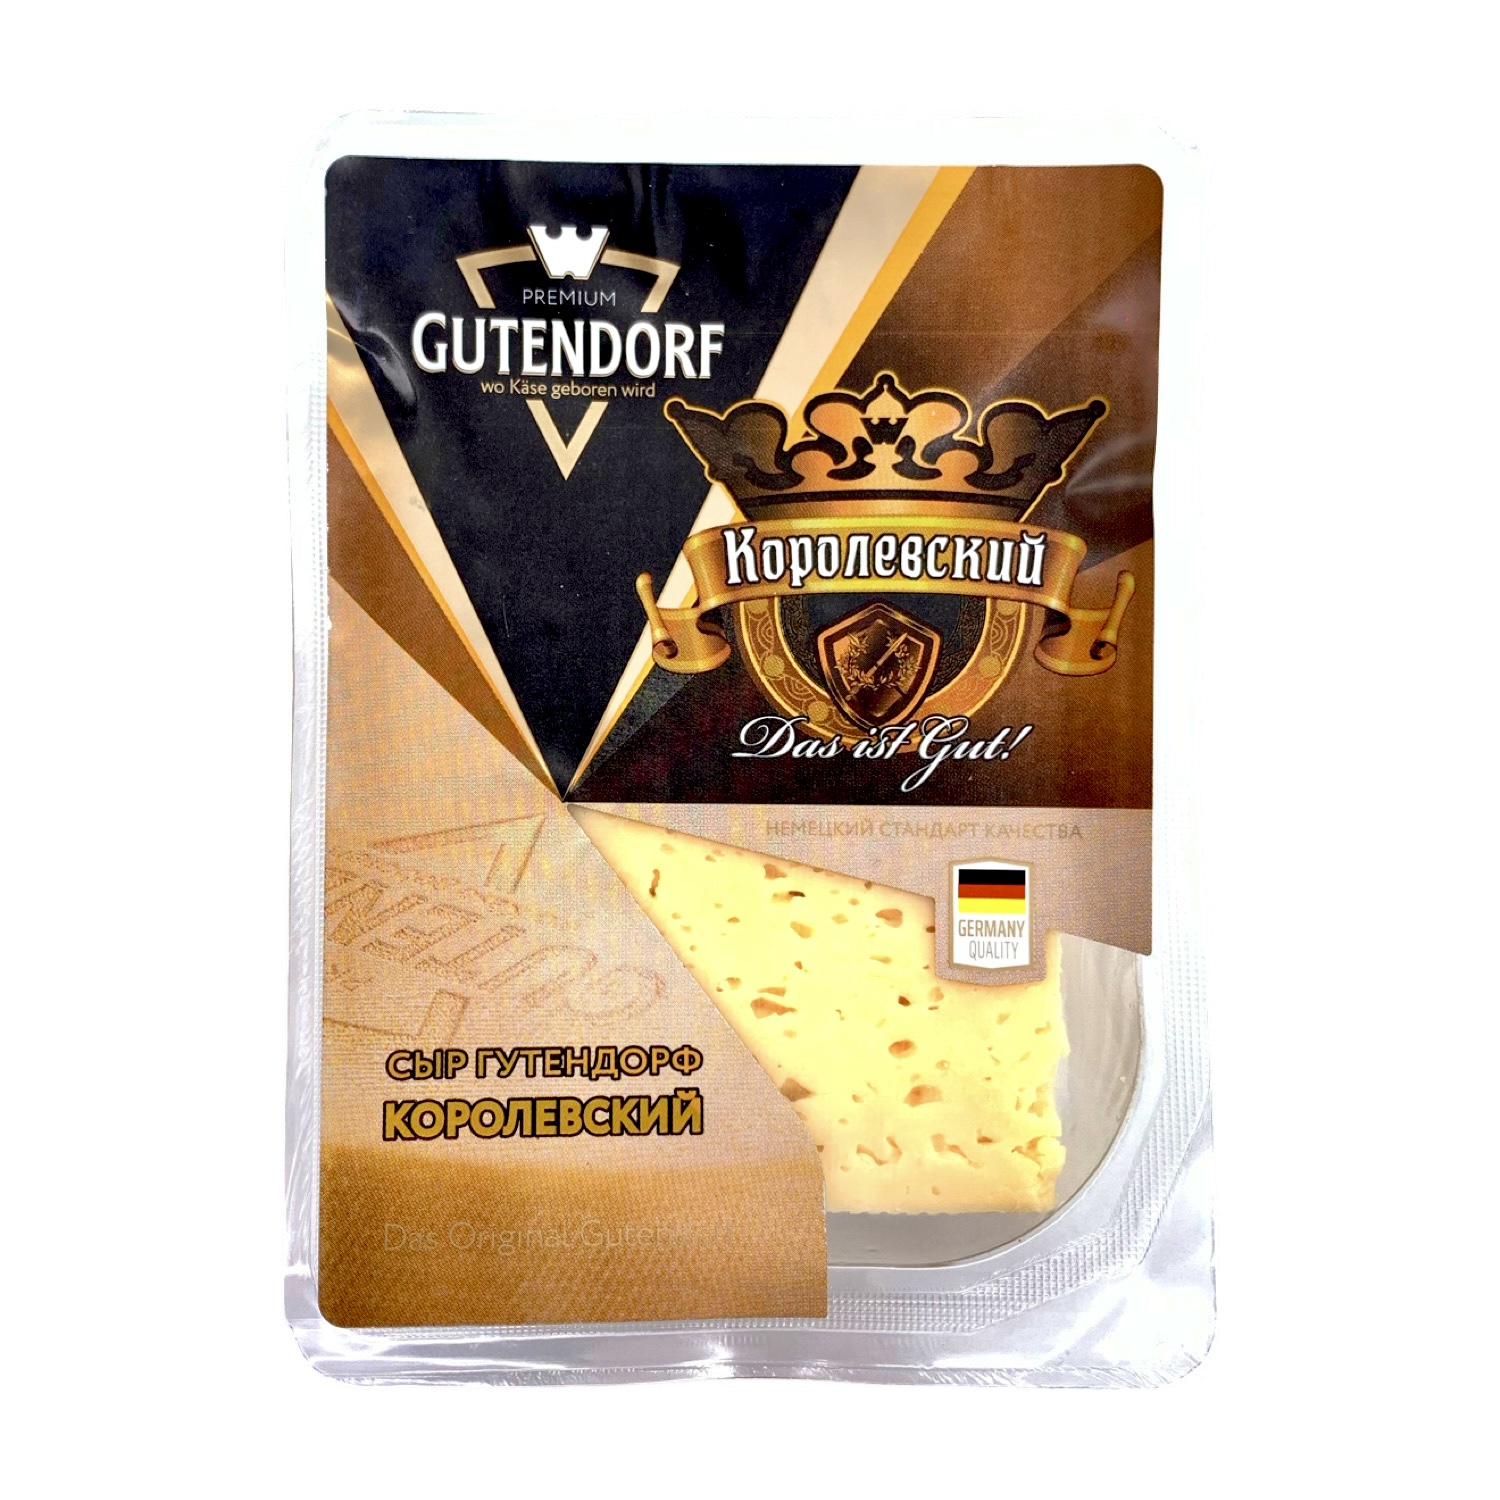 Сыр Королевский со вкусом топленого молока Gutendorf  45%  фасованный брусок 180г